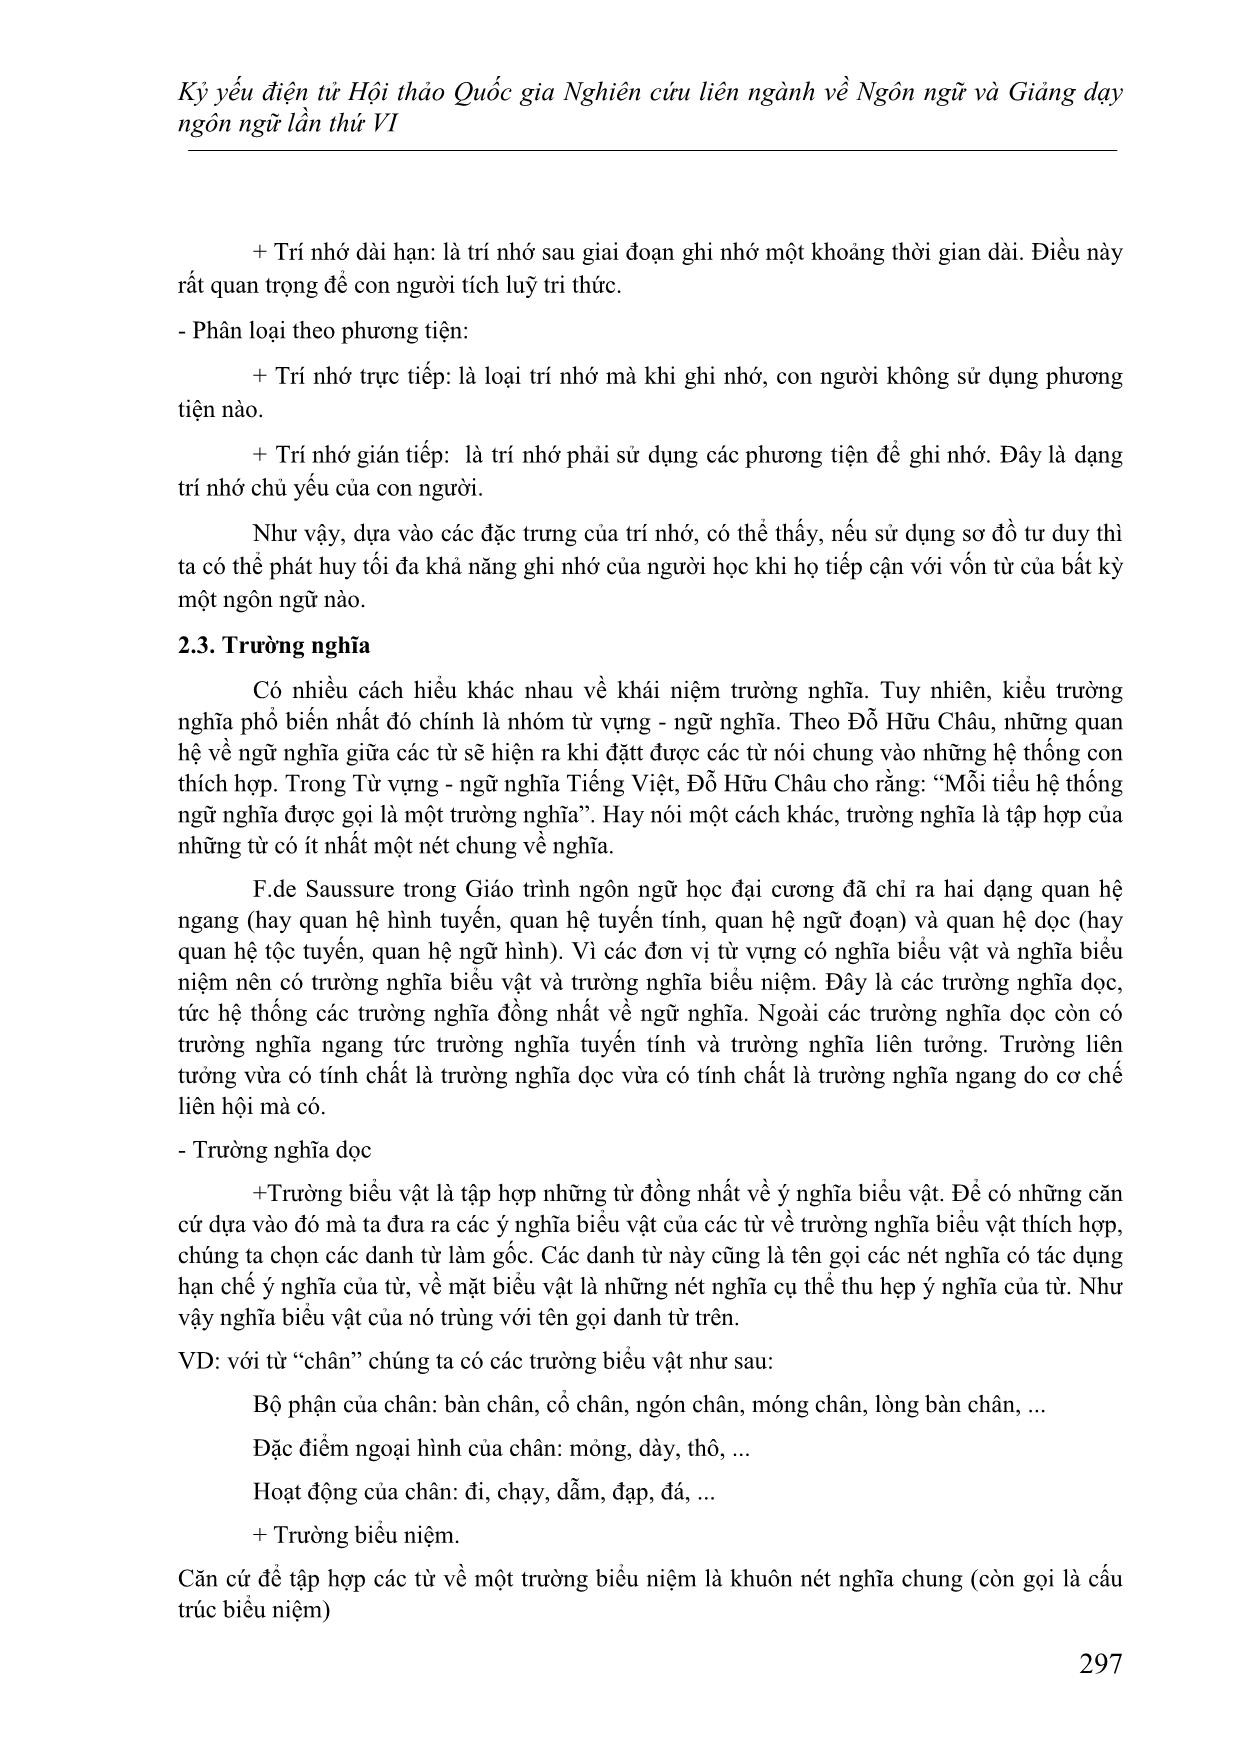 Phương pháp dạy từ vựng tiếng Việt cho người nước ngoài bằng sơ đồ tư duy trang 6